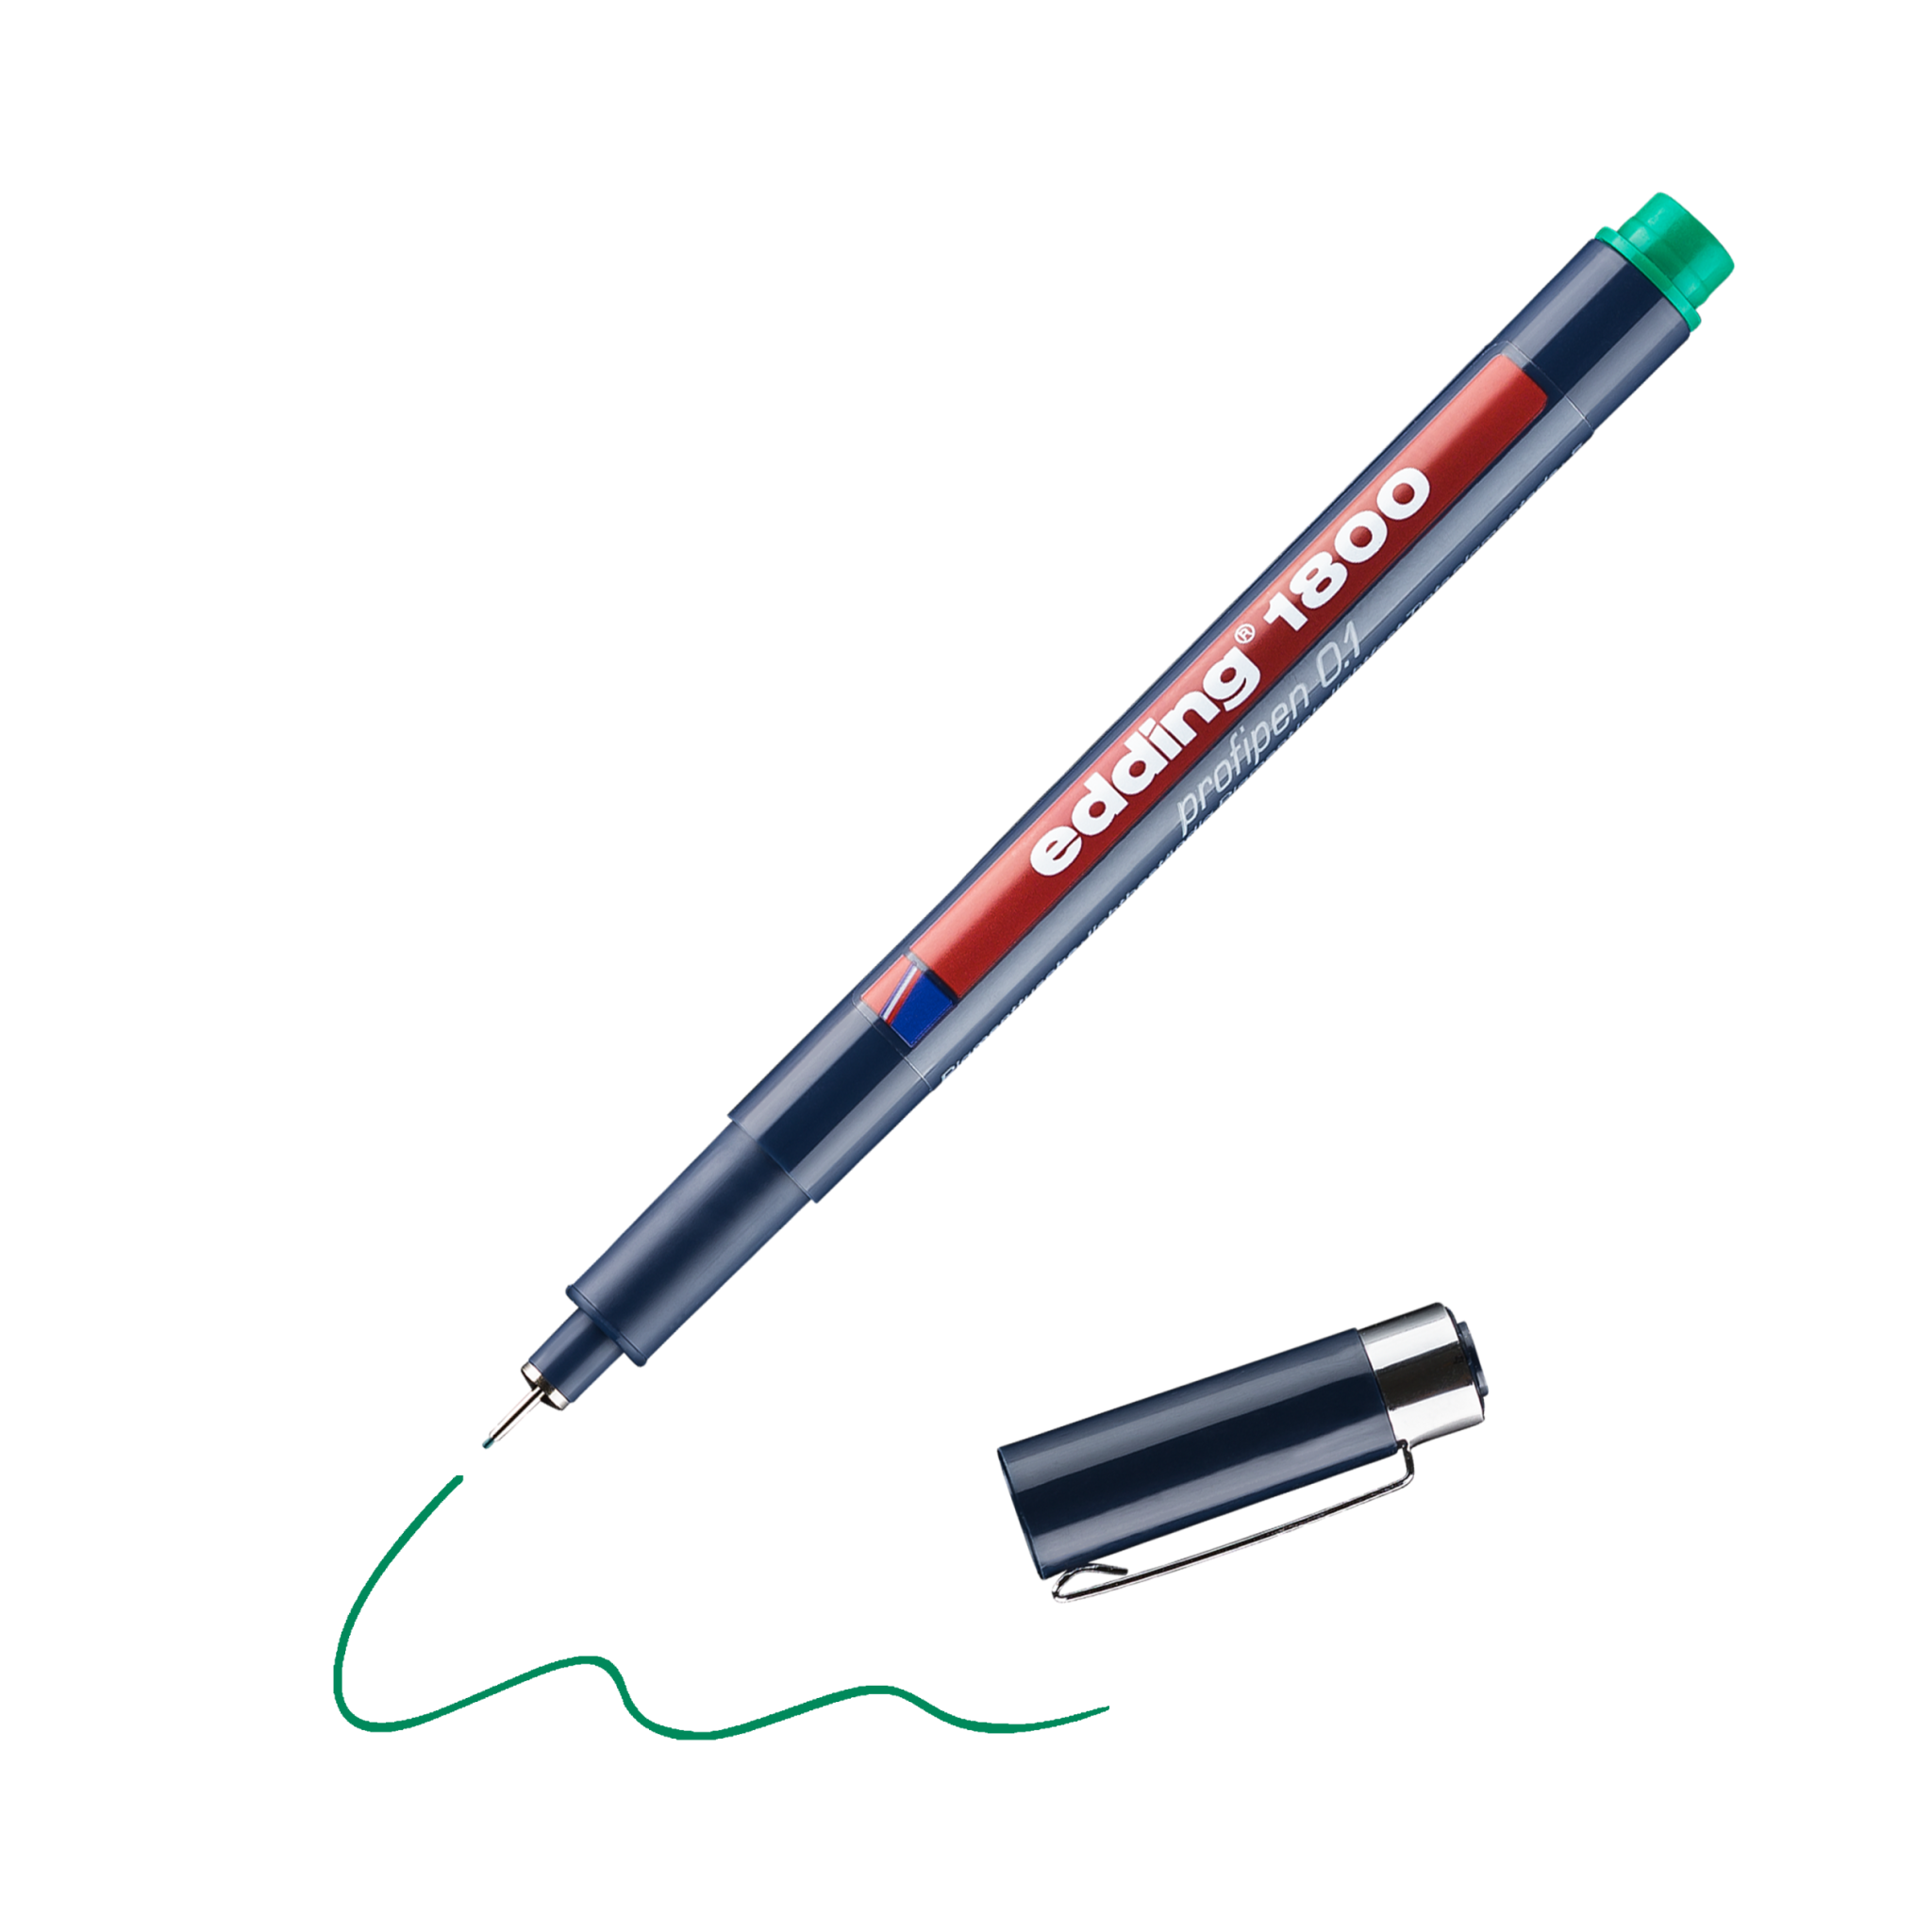 Ein edding 1800 Präzisionsfeinschreiber liegt mit abgenommener Kappe schräg auf einer schwarzen Oberfläche und aus seiner Spitze wird ein Kringel grüner Tinte gezogen.